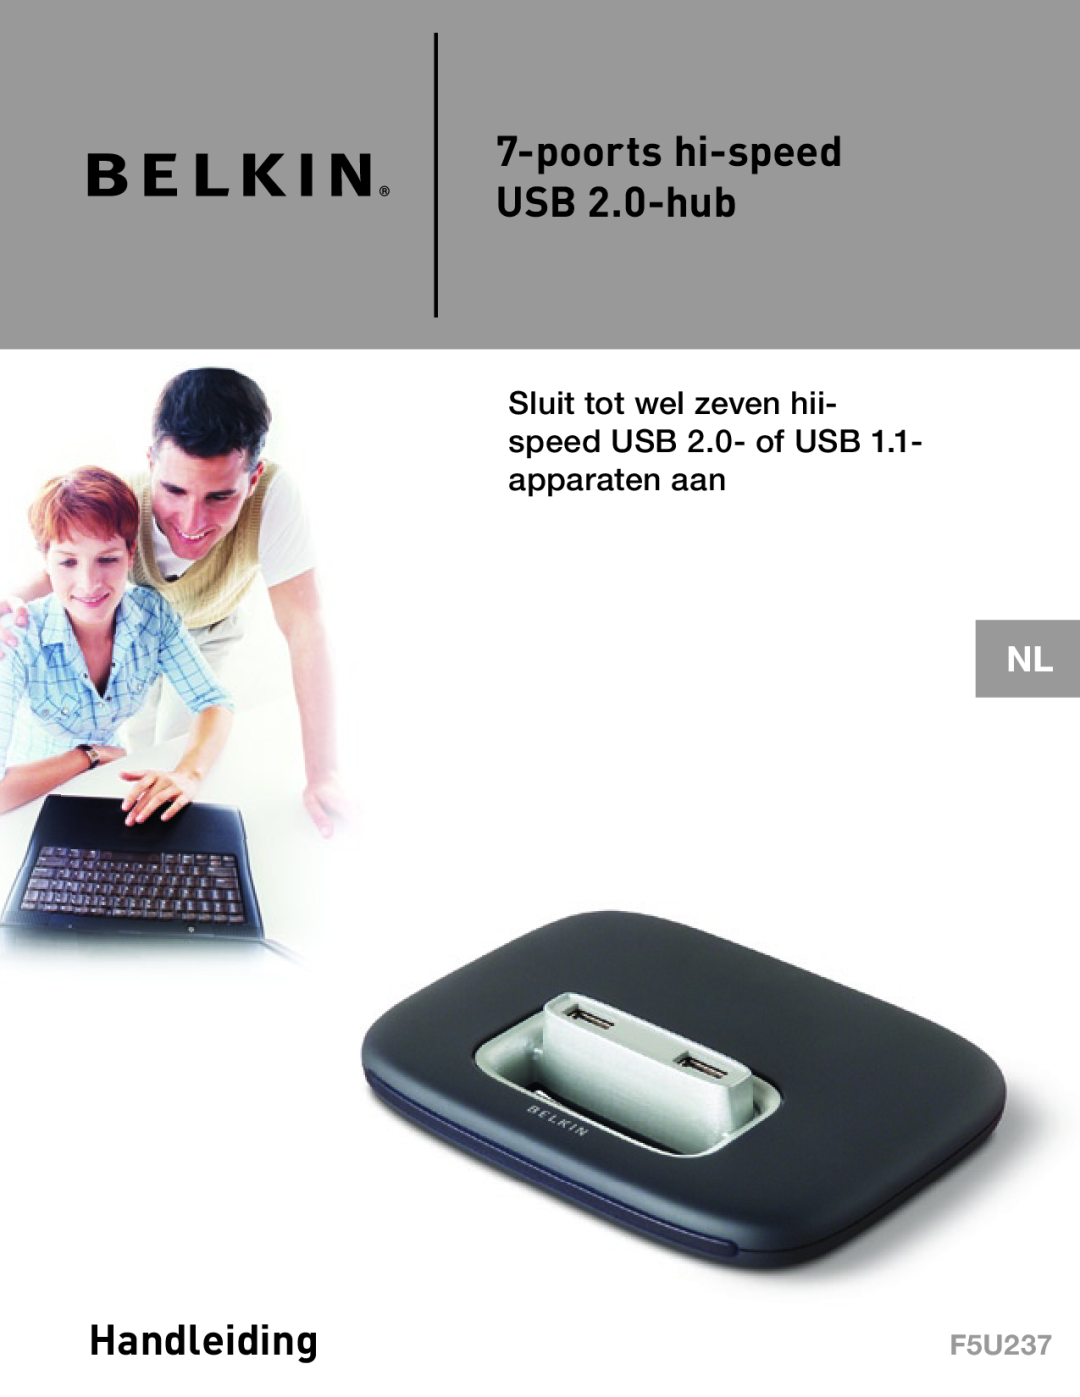 Belkin F5U237 poorts hi-speed USB 2.0-hub, Handleiding, Sluit tot wel zeven hii- speed USB 2.0- of USB 1.1- apparaten aan 